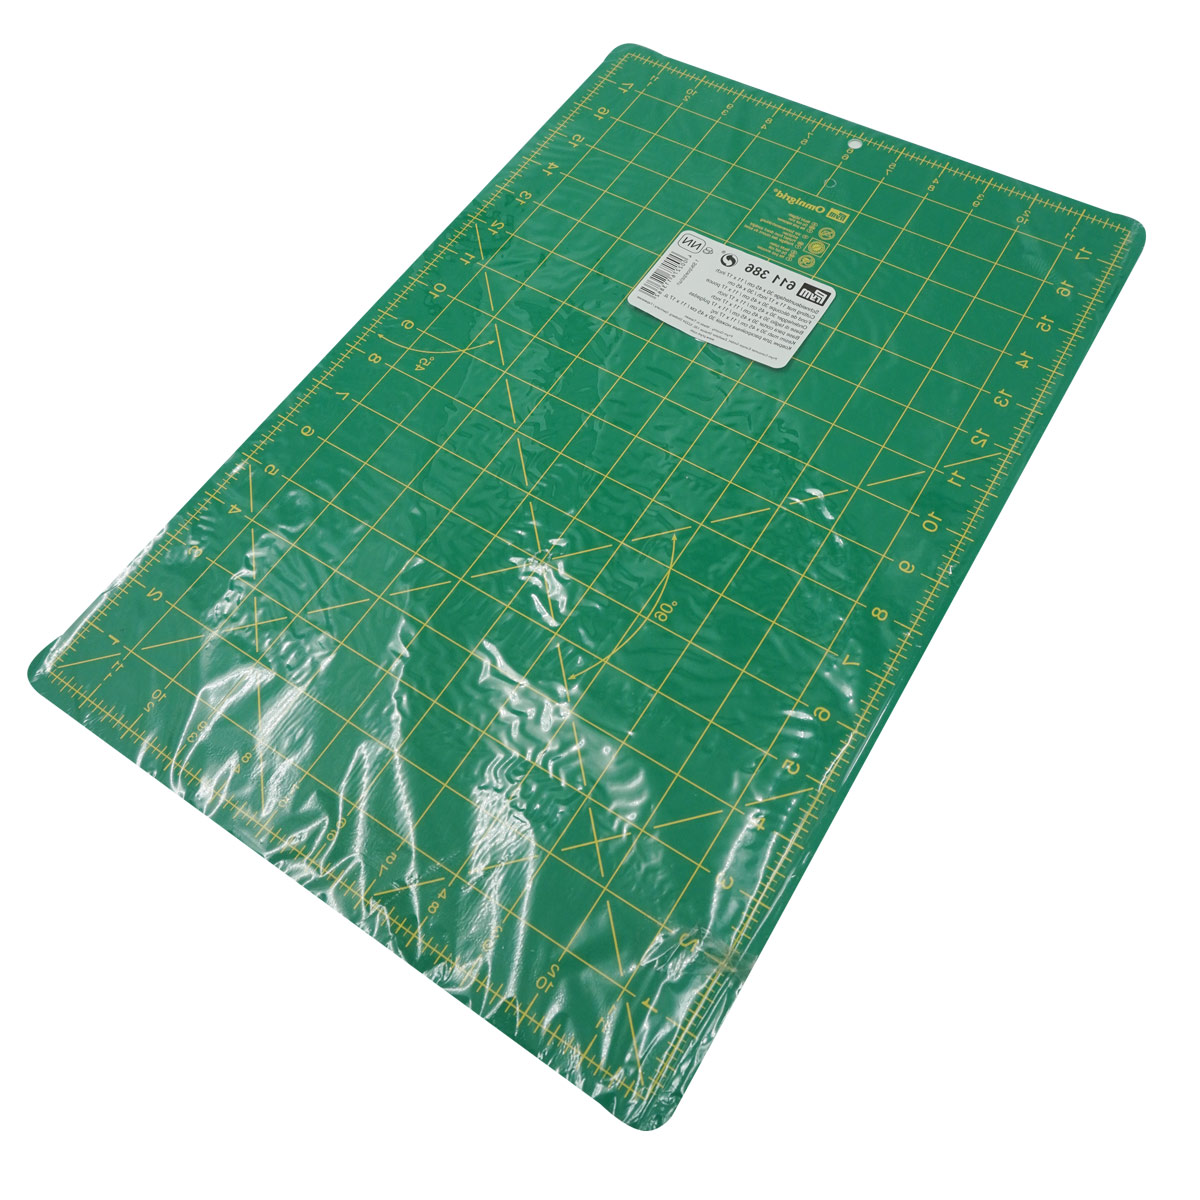 Коврик - подложка раскройный Prym мат для резки ткани бумаги самовосстанавливающийся с разметкой зеленый 45 х 30 см 611386 - фото 4